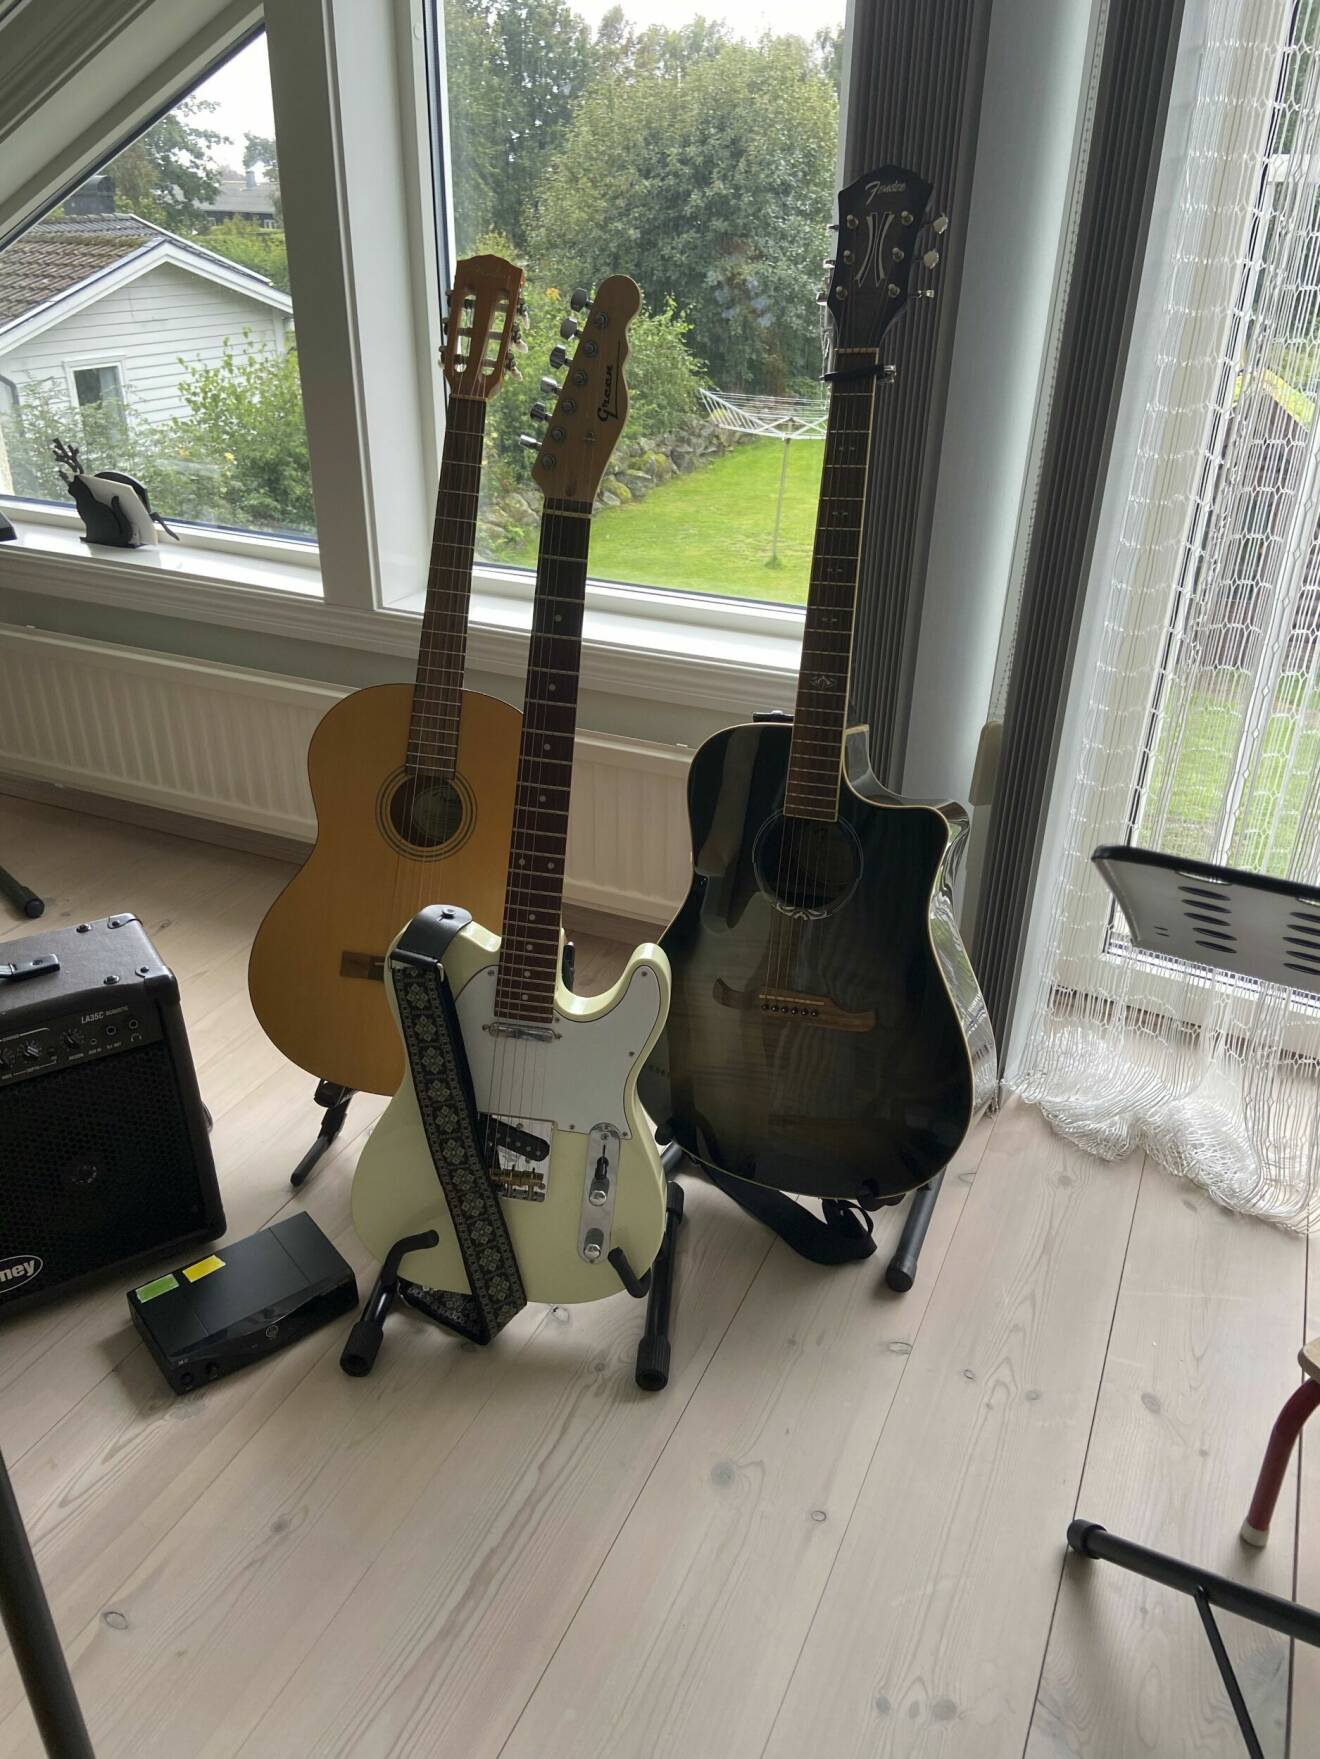 Tre gitarrer på gitarrställ och en högtalare.